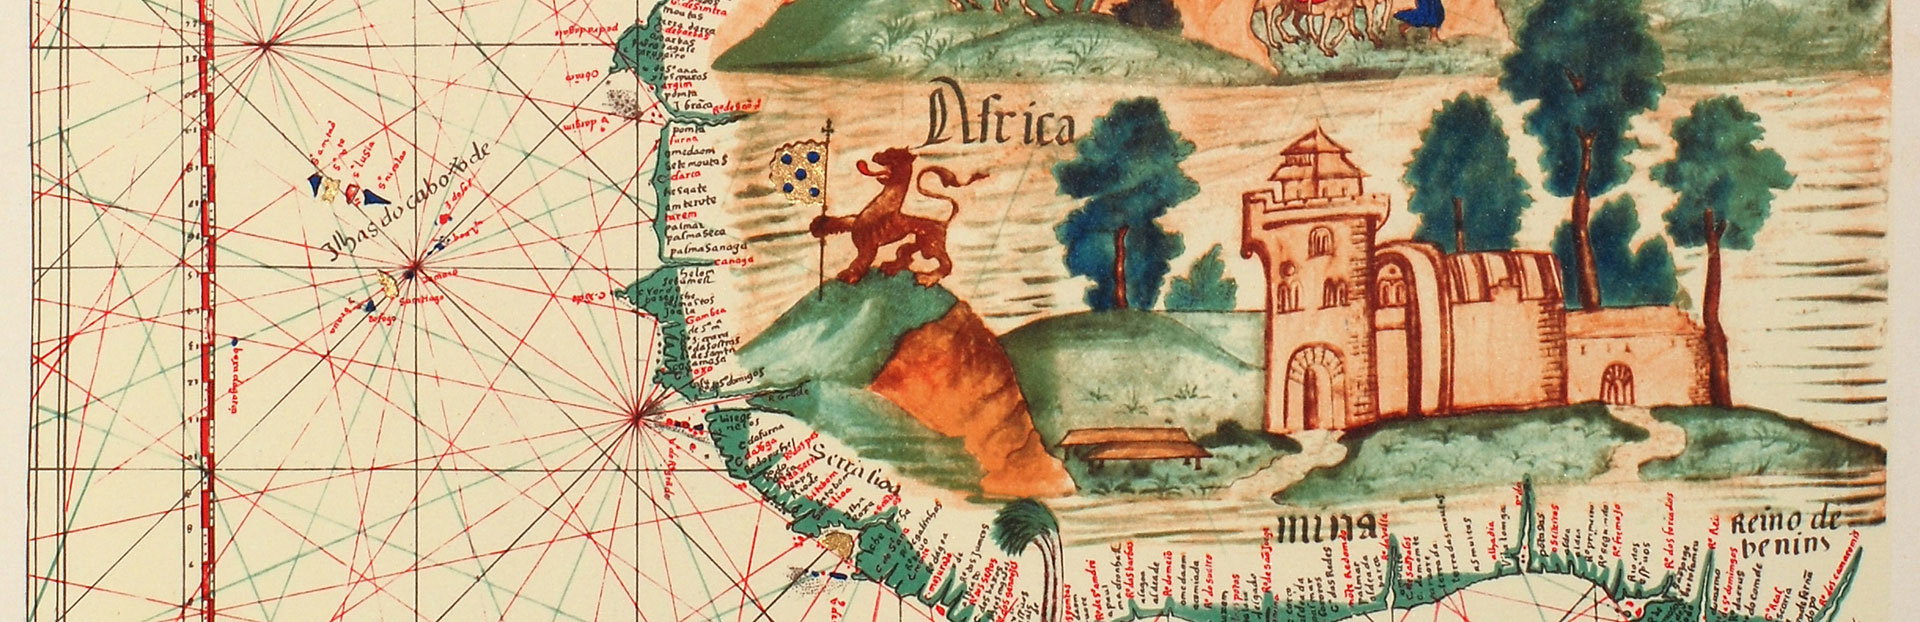 El interés de San Ignacio por África – África subsahariana